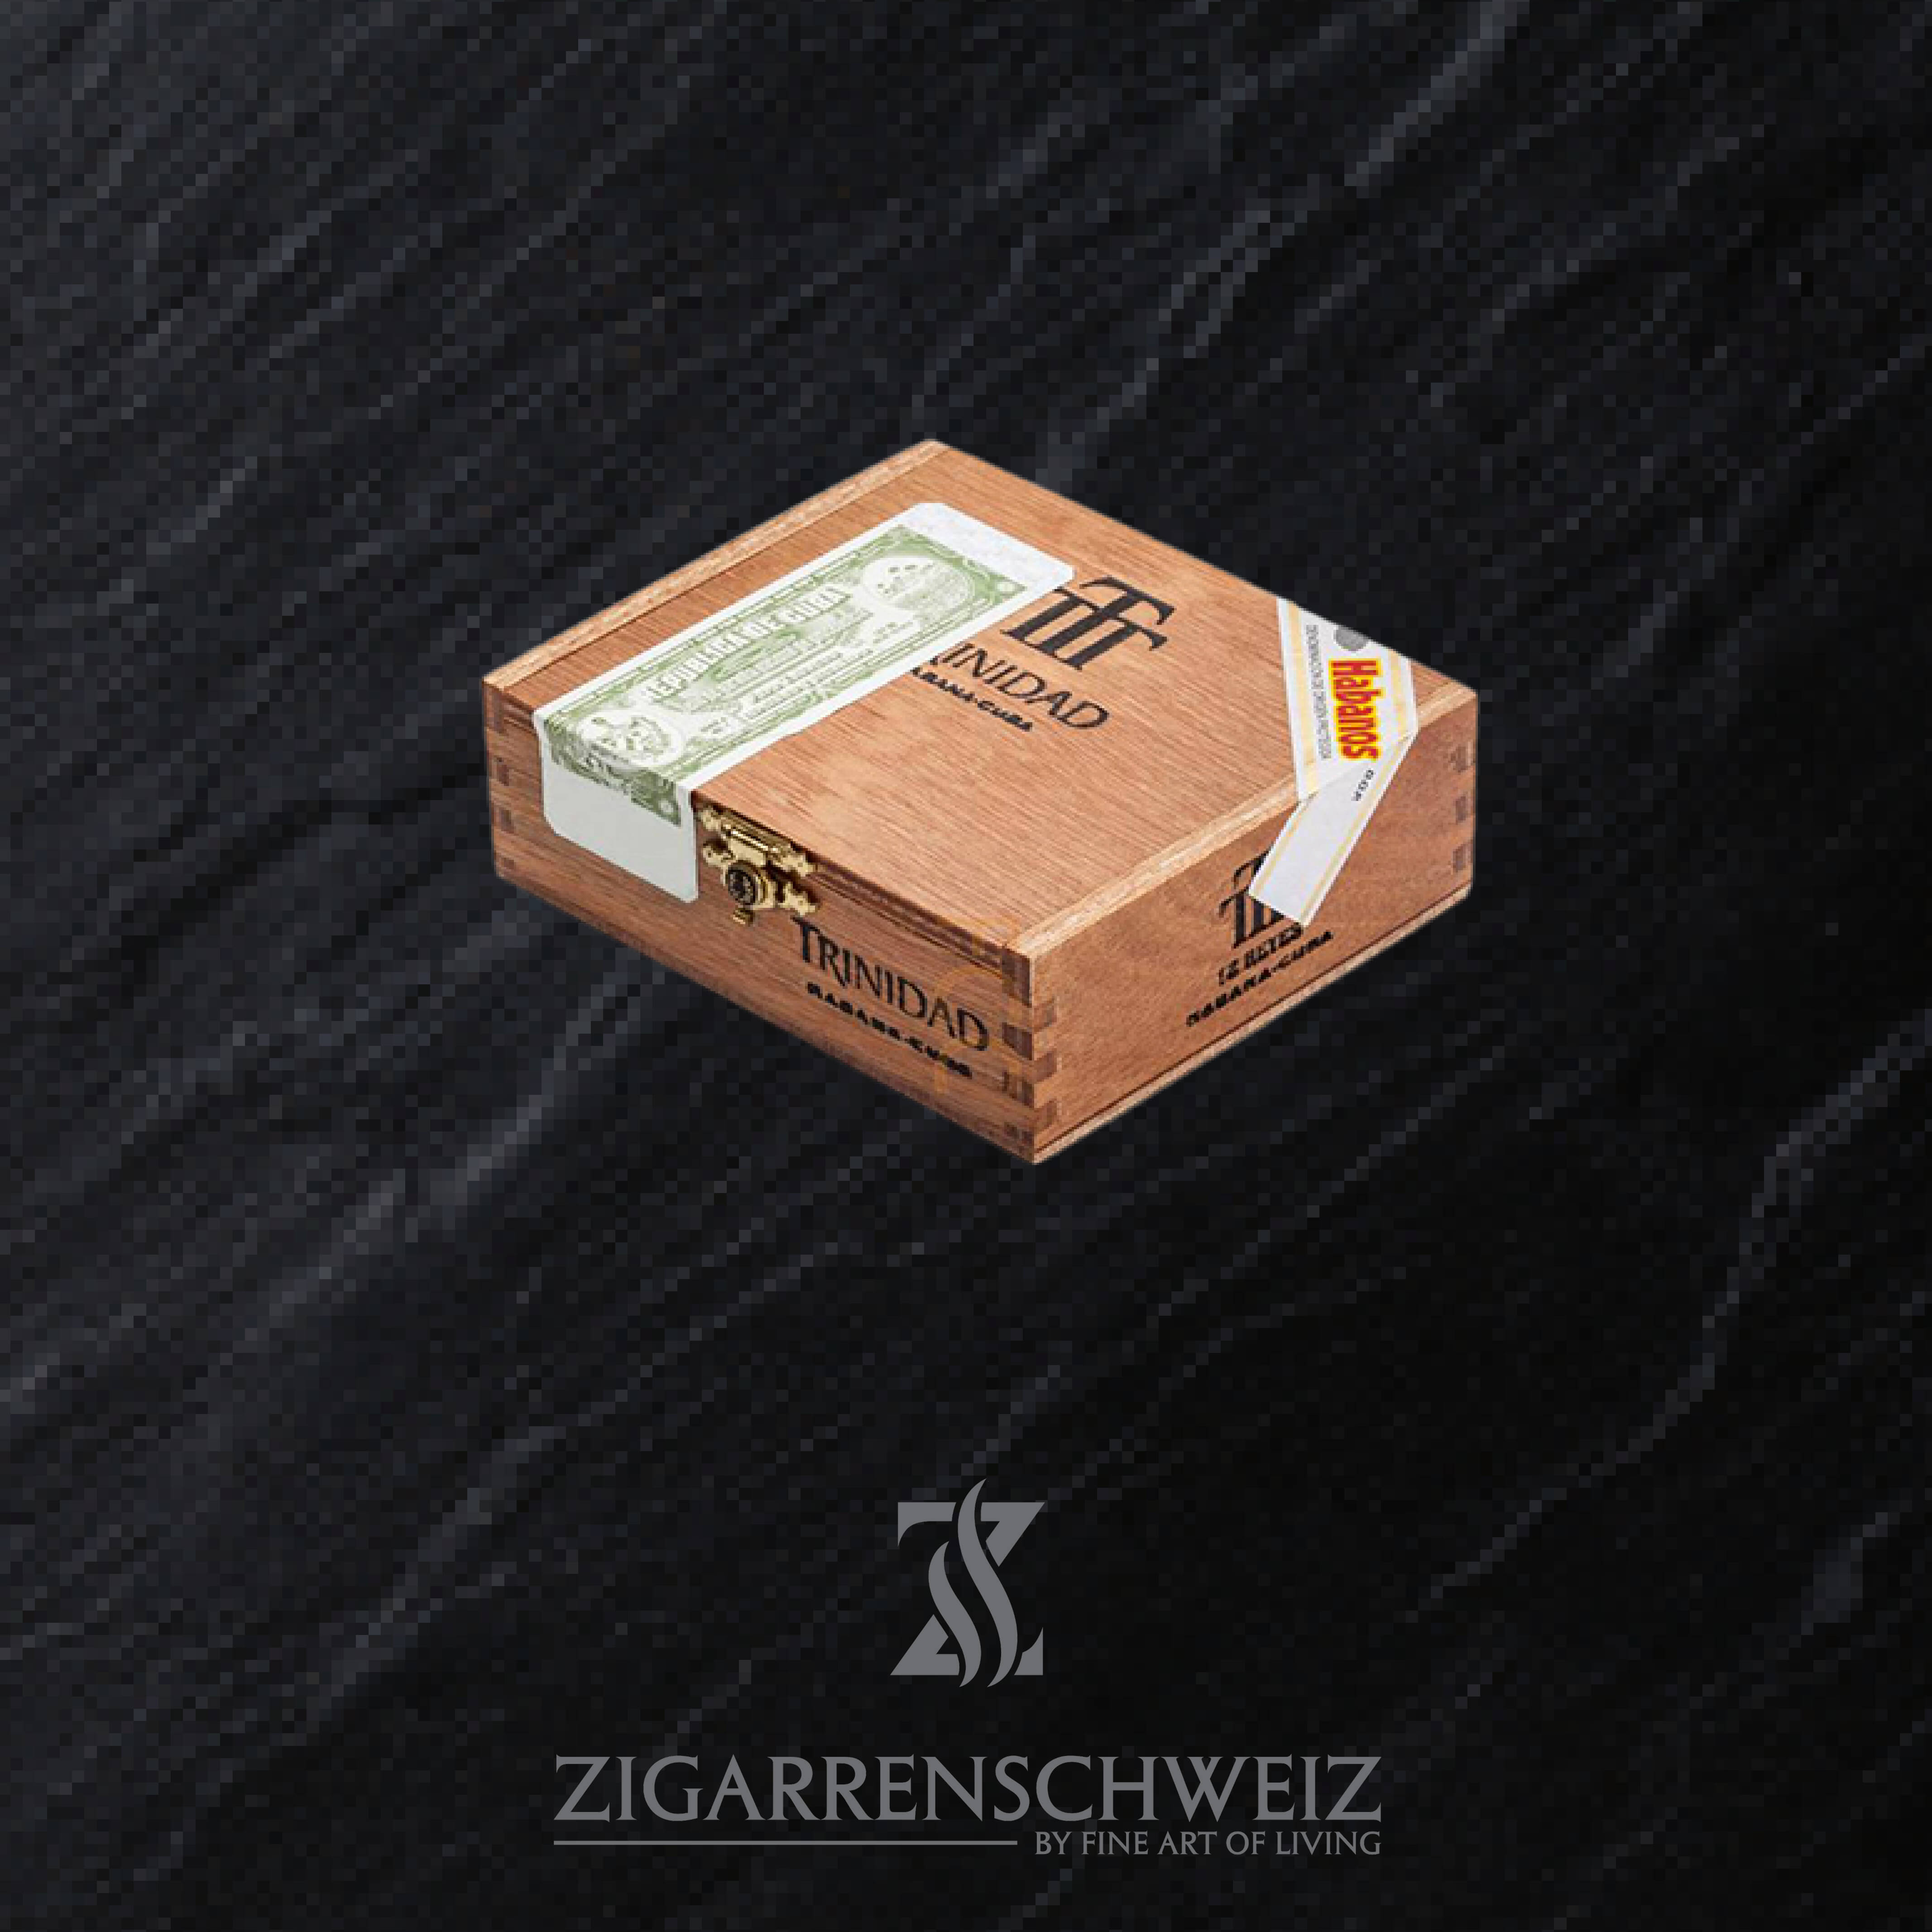 12er Kiste Trinidad Reyes Zigarren aus Kuba ungeöffnet